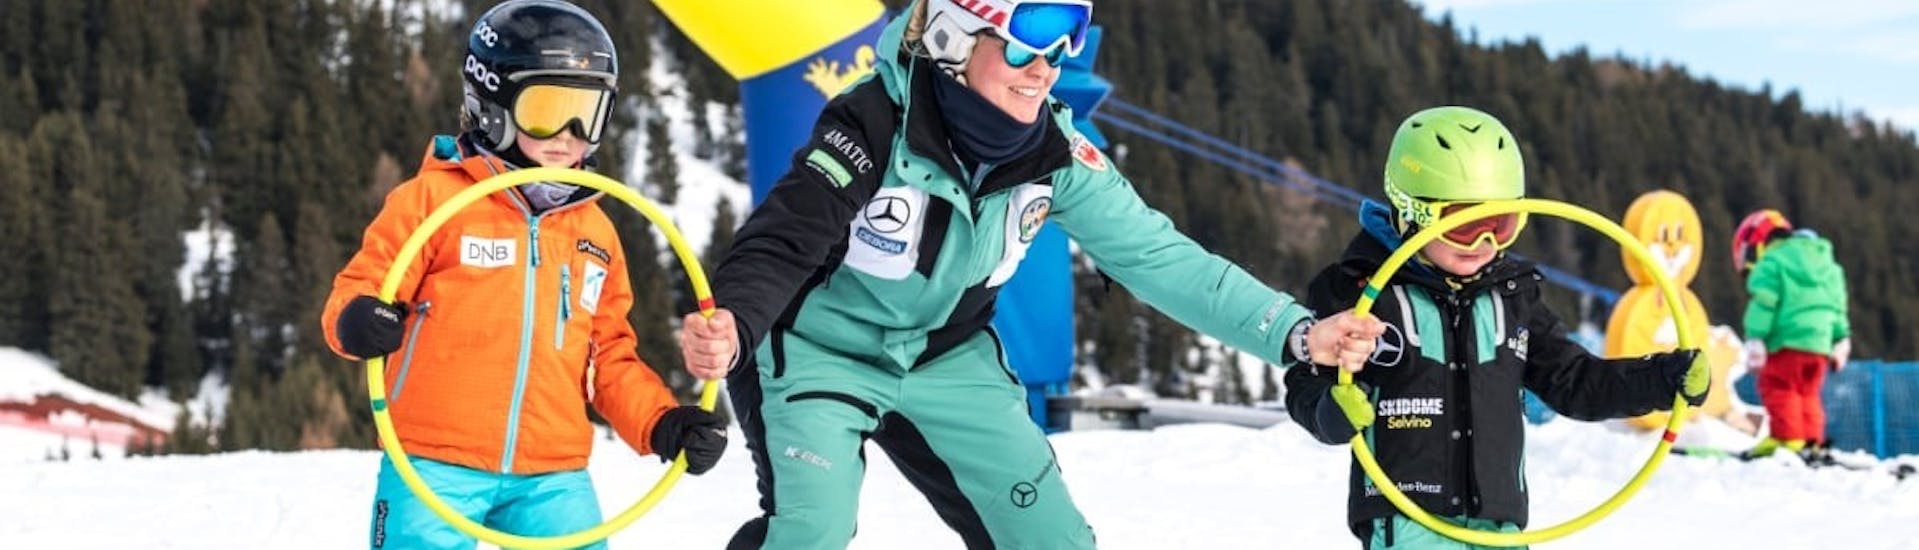 Dei bambini tengono dei cerchi durante le Lezioni di sci per bambini (6-14 anni) di tutti i livelli con Skischool Schlern 3000 Alpe di Siusi.